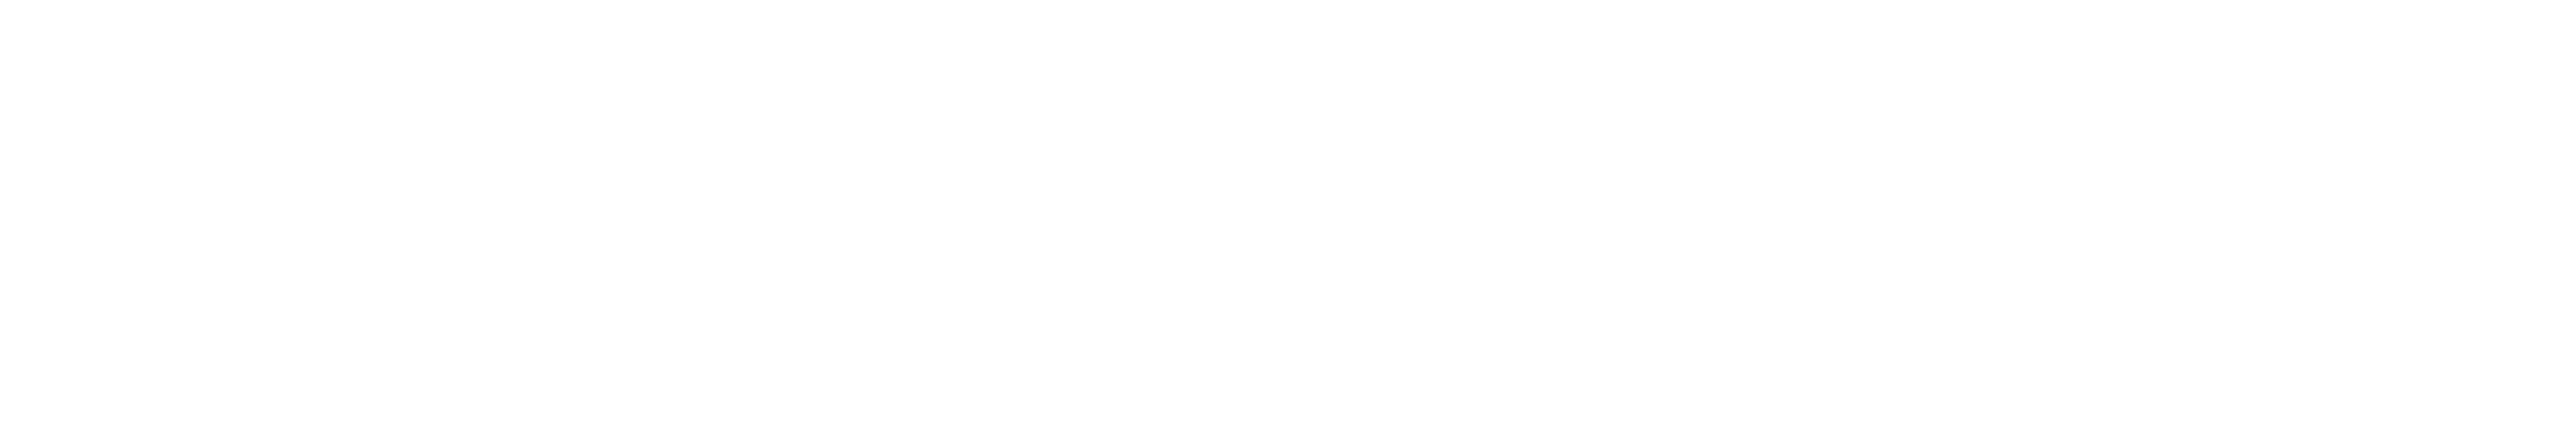 hack4impact uiuc logo